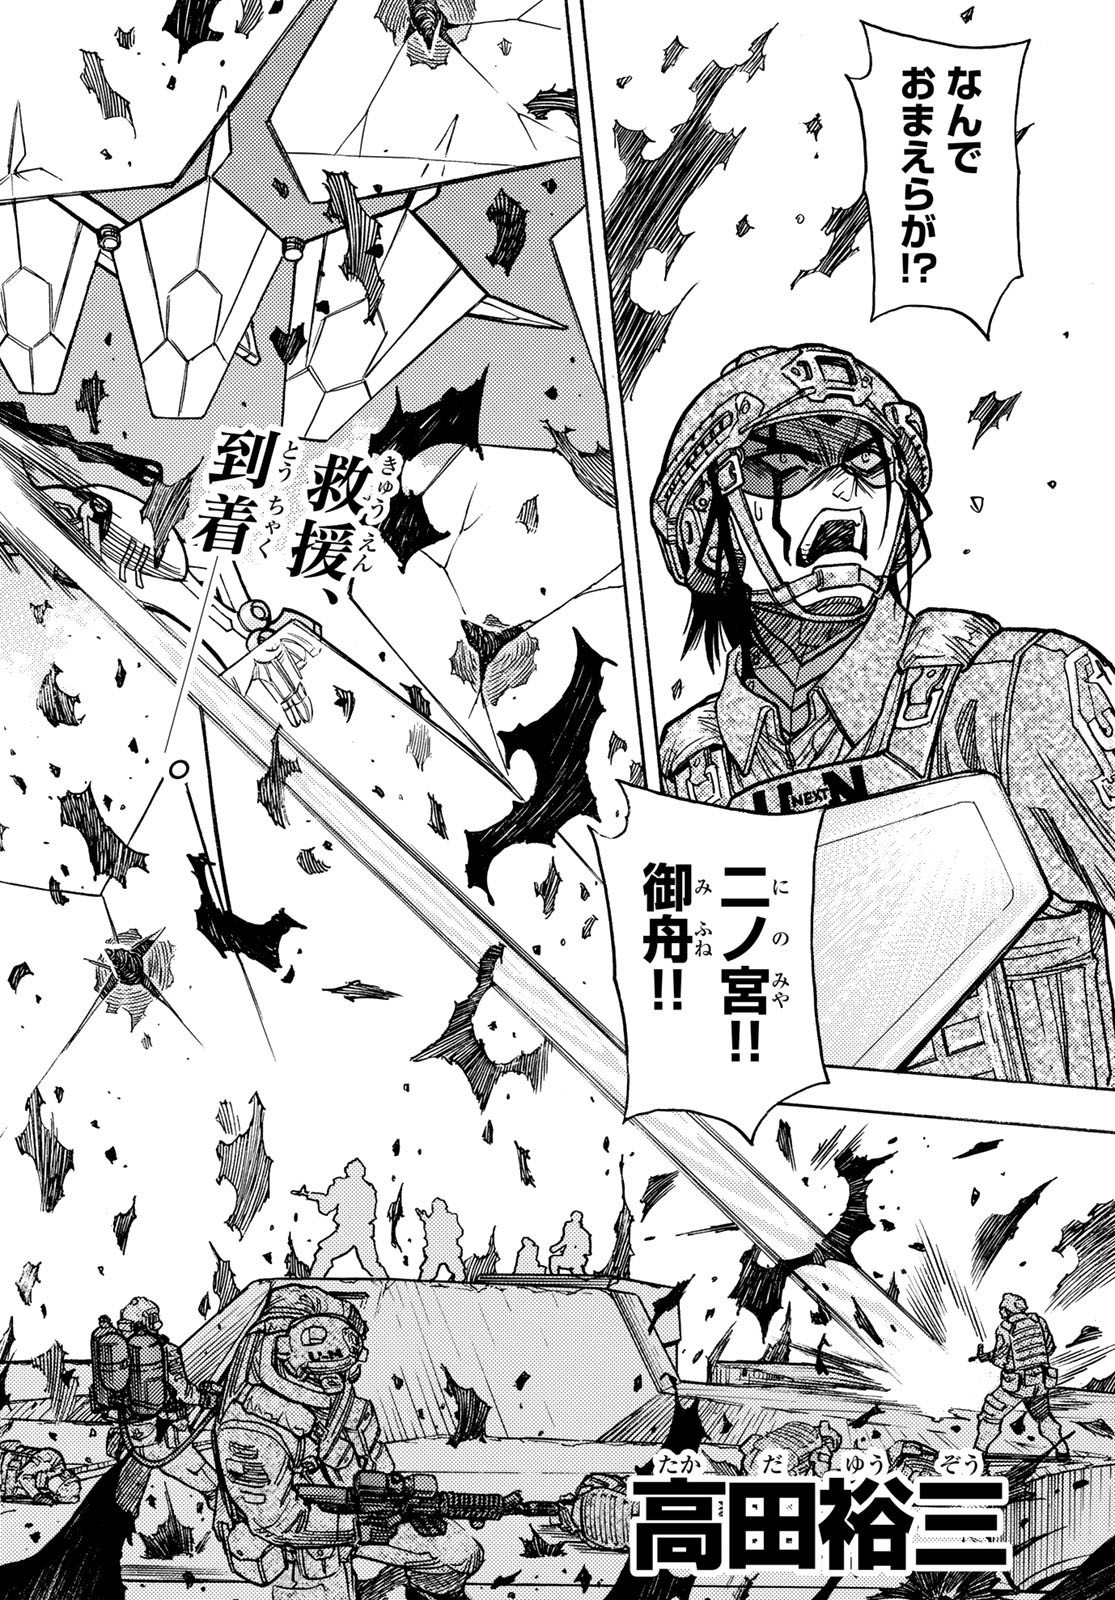 Mugou no Schnell Gear: Chikyuugai Kisouka AI - Chapter 48 - Page 2